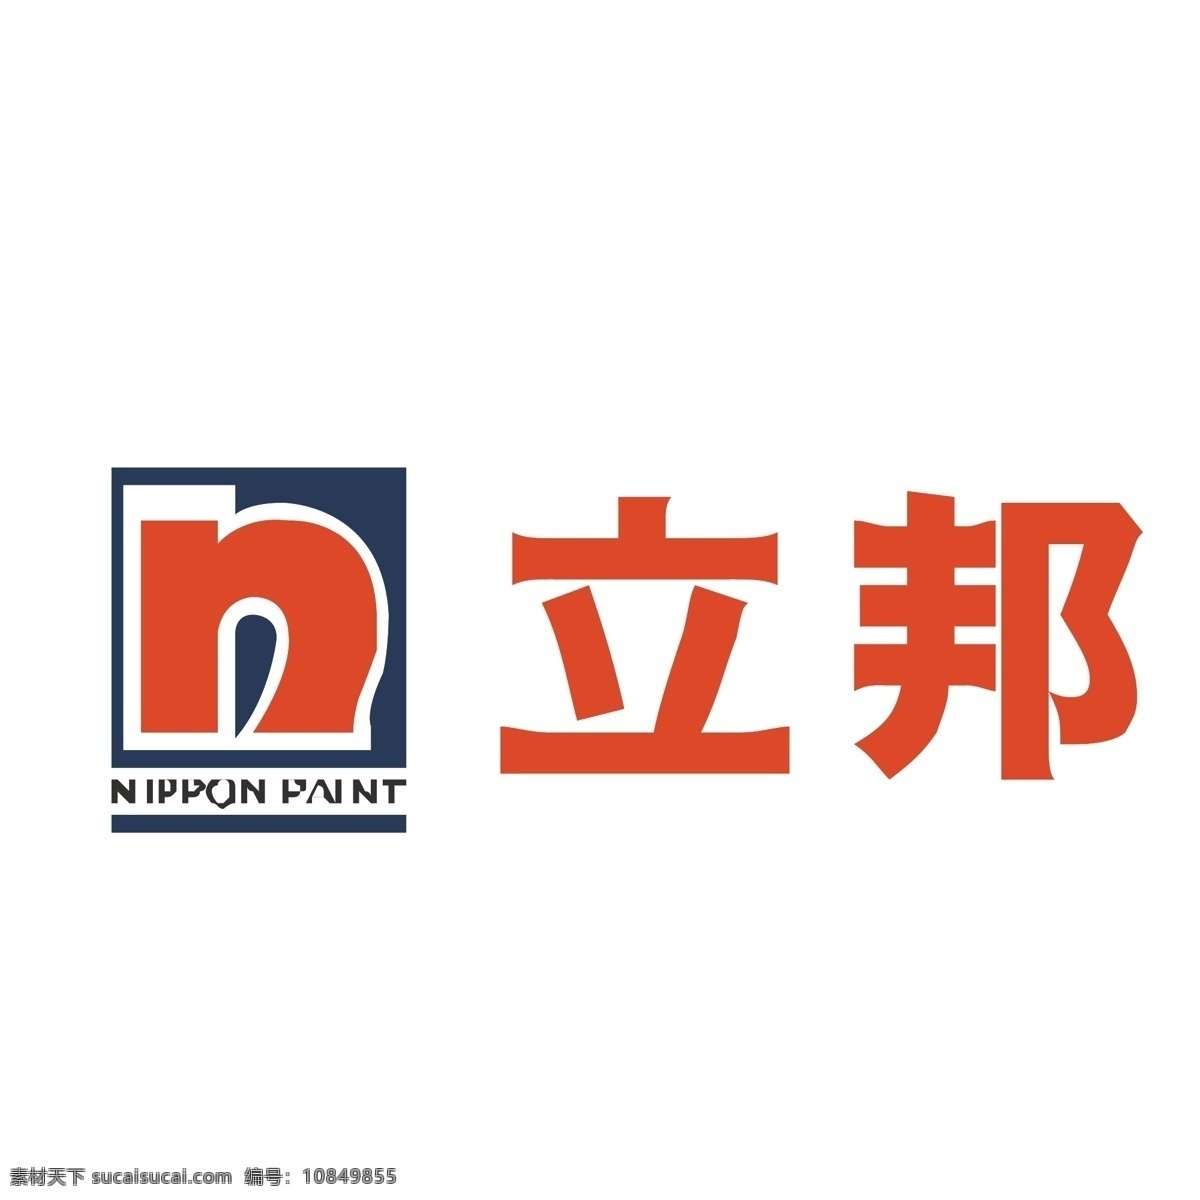 立邦logo 立邦 图标 商标 品牌 logo